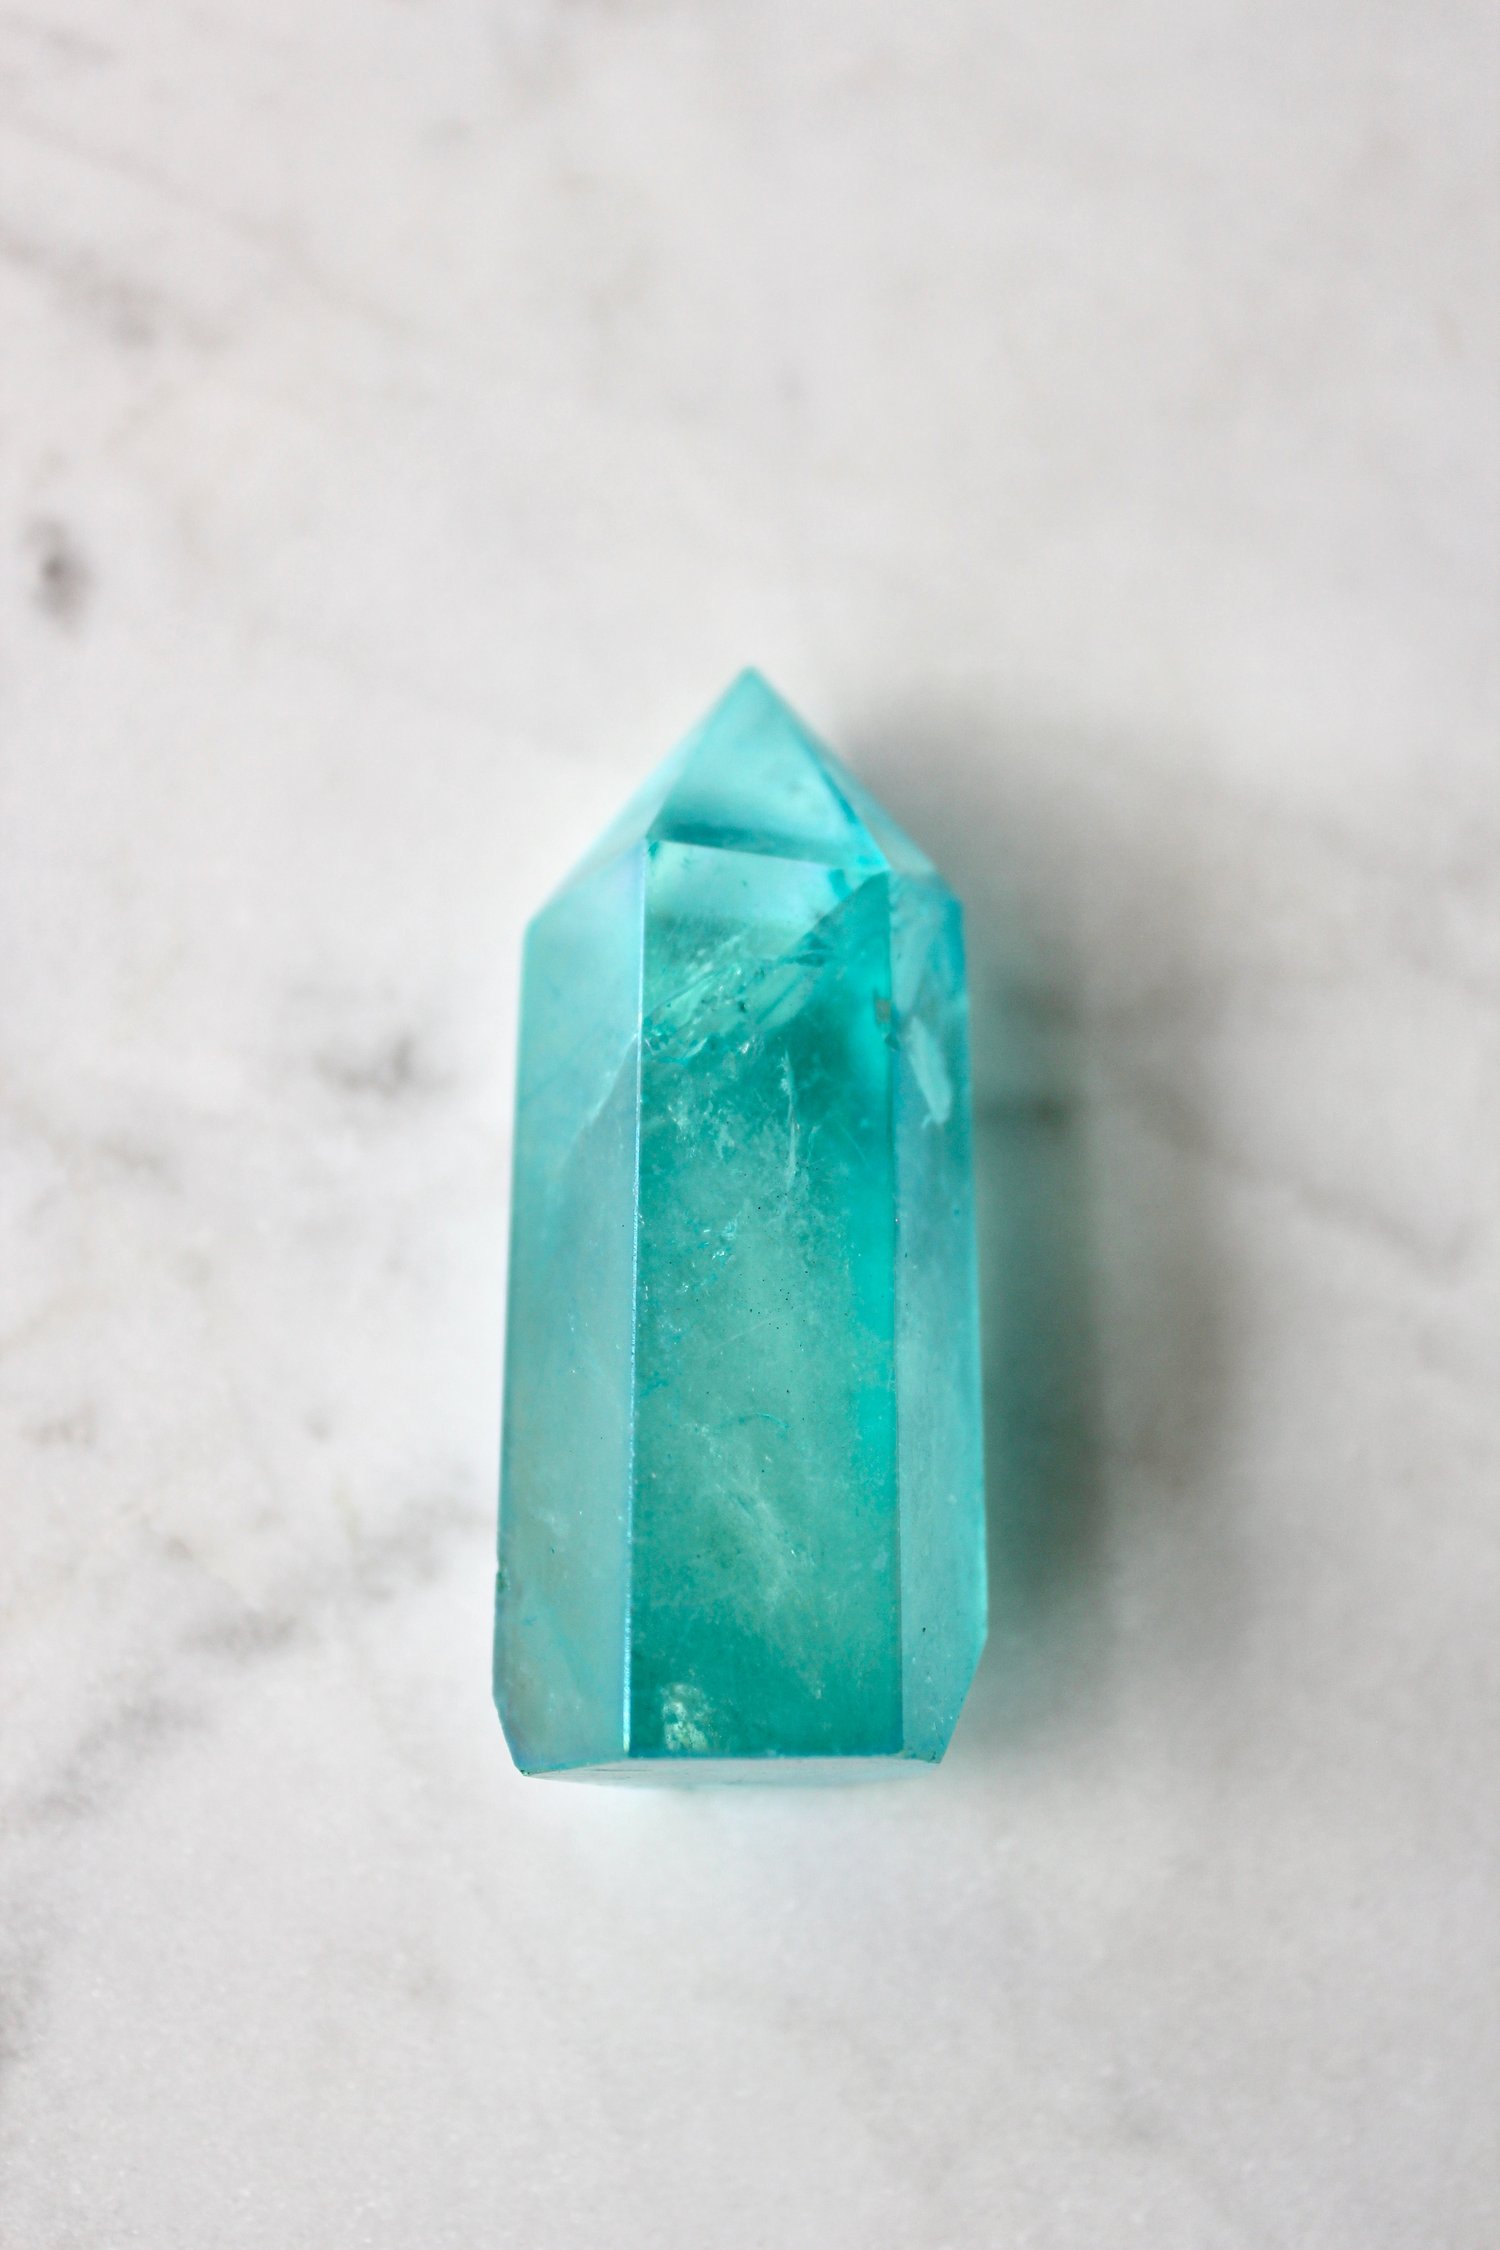 Image of Aqua Aura Quartz Crystal